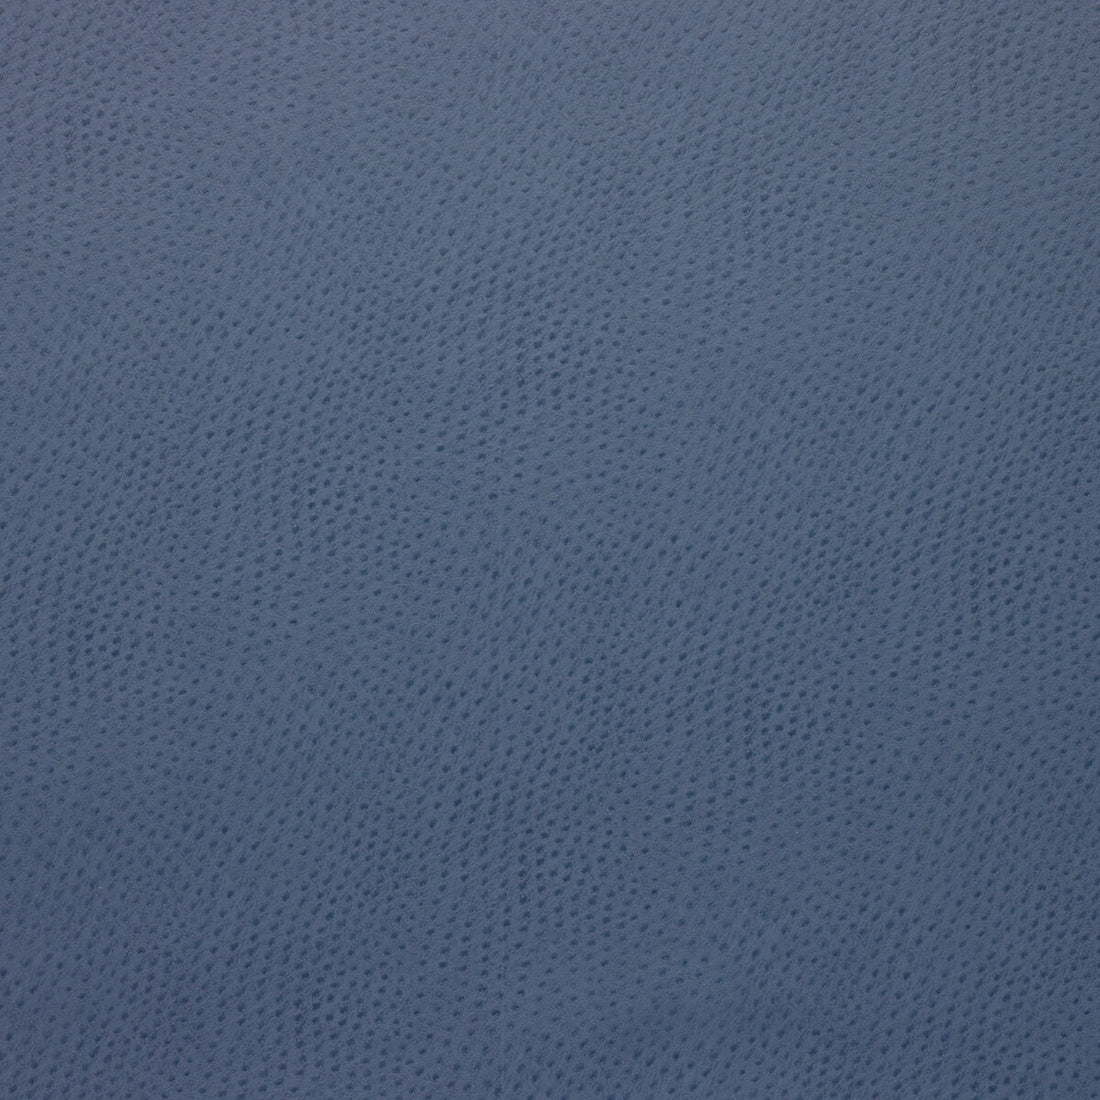 Kravet Design fabric in delaney-5 color - pattern DELANEY.5.0 - by Kravet Design